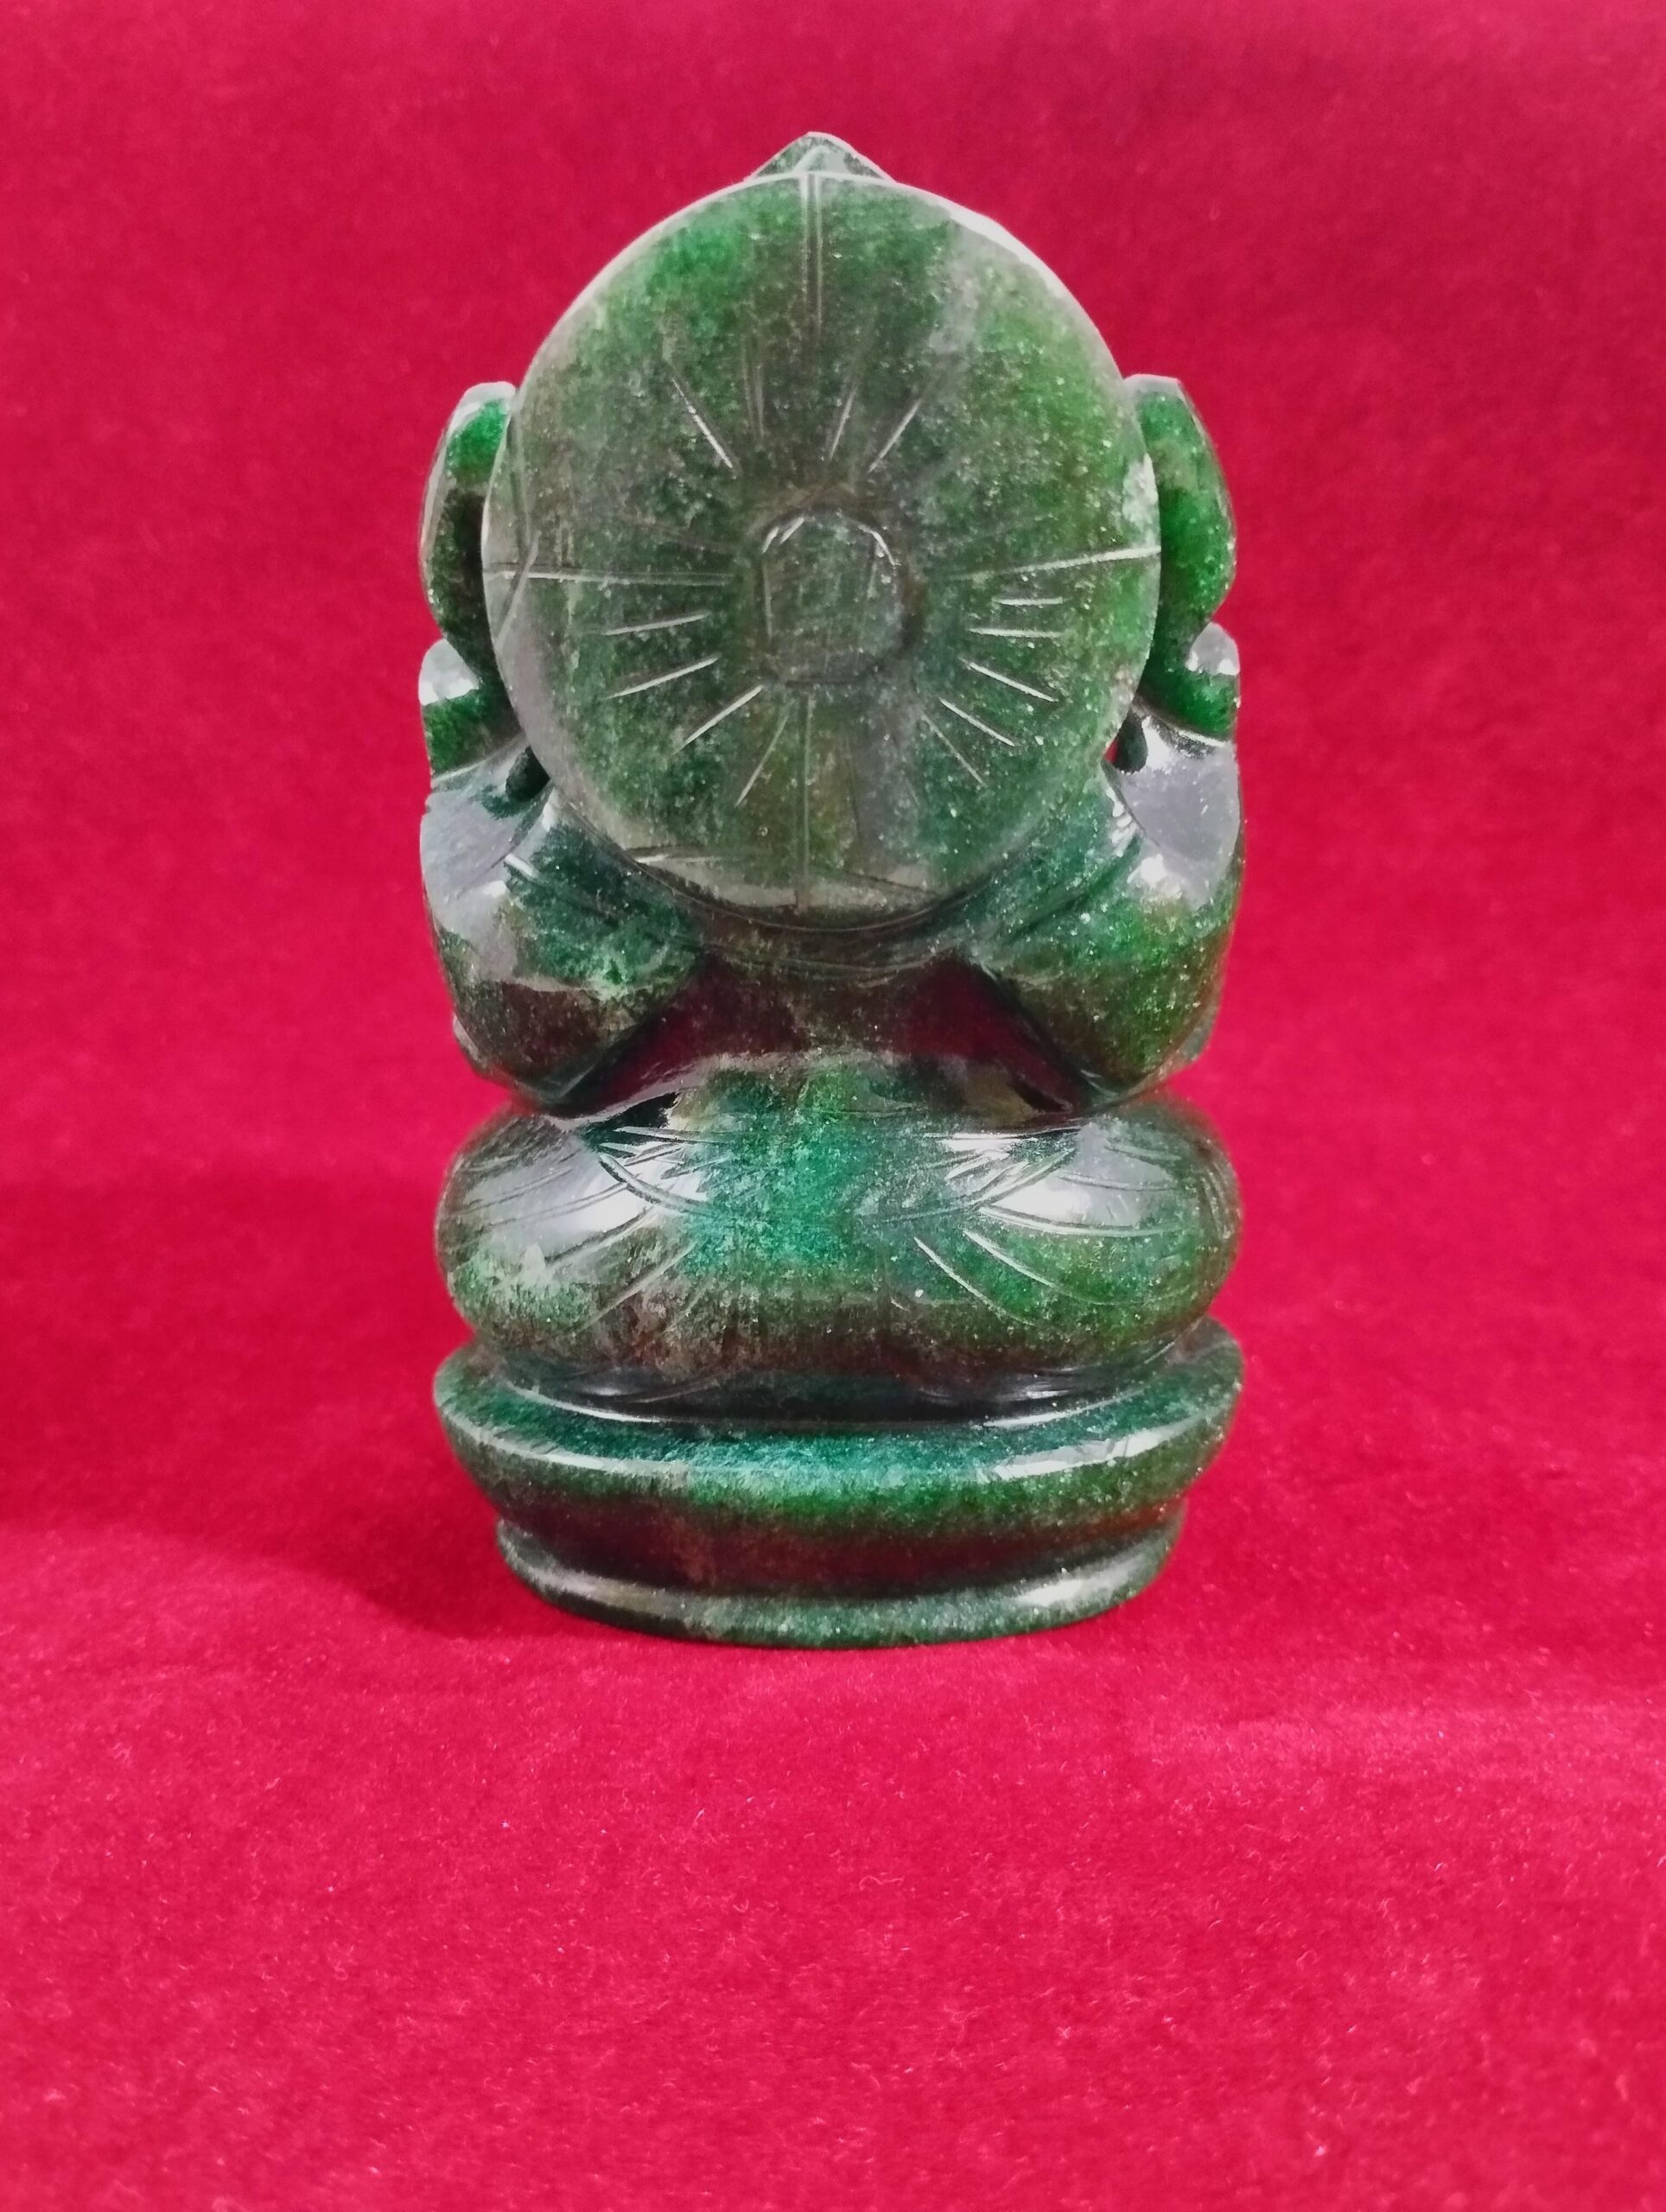 Green Jade Ganesha